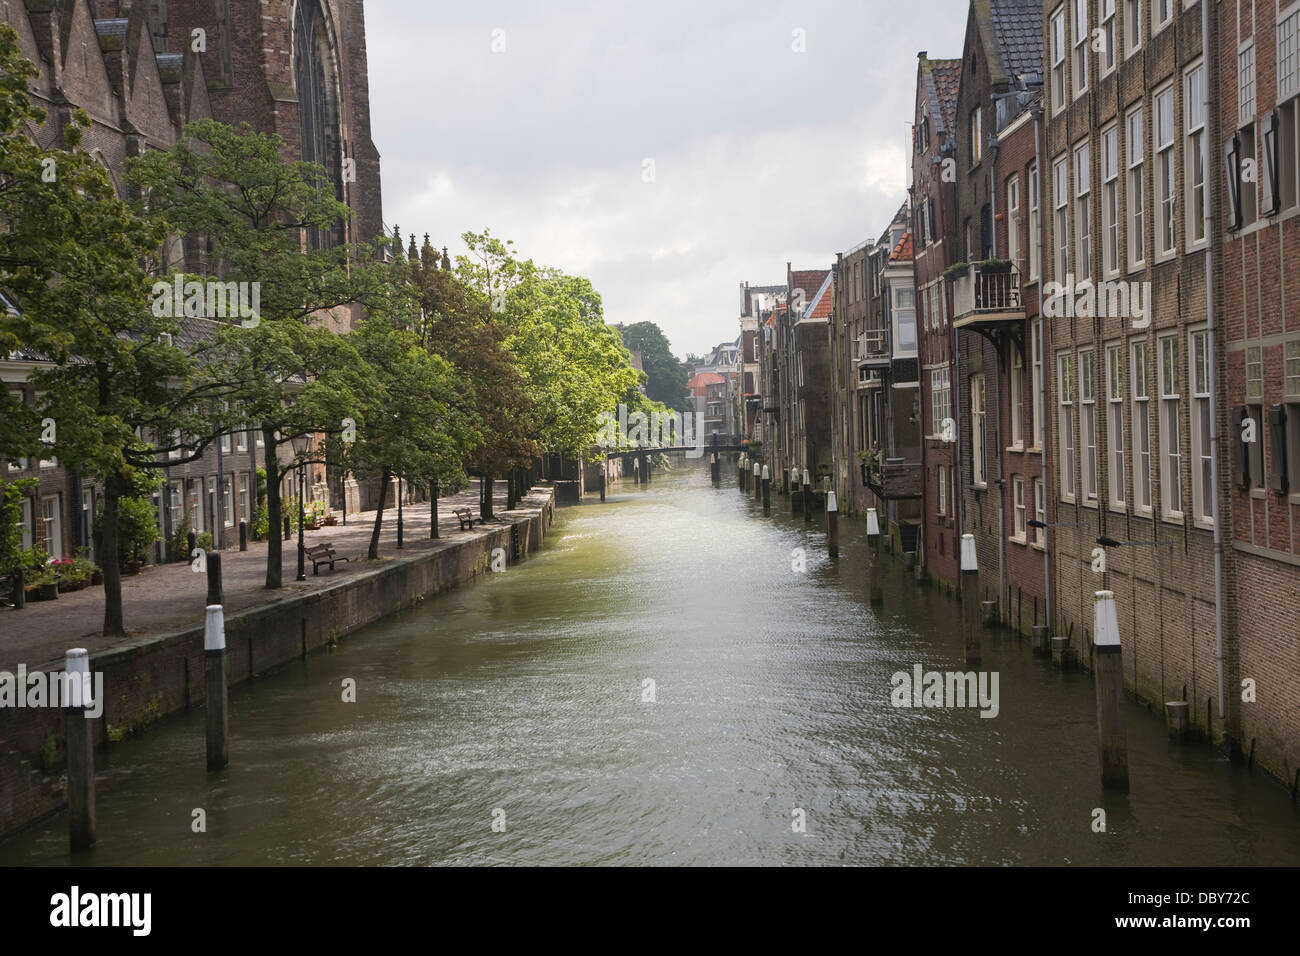 Maisons du canal cathédrale Dordrecht Pays-Bas Banque D'Images